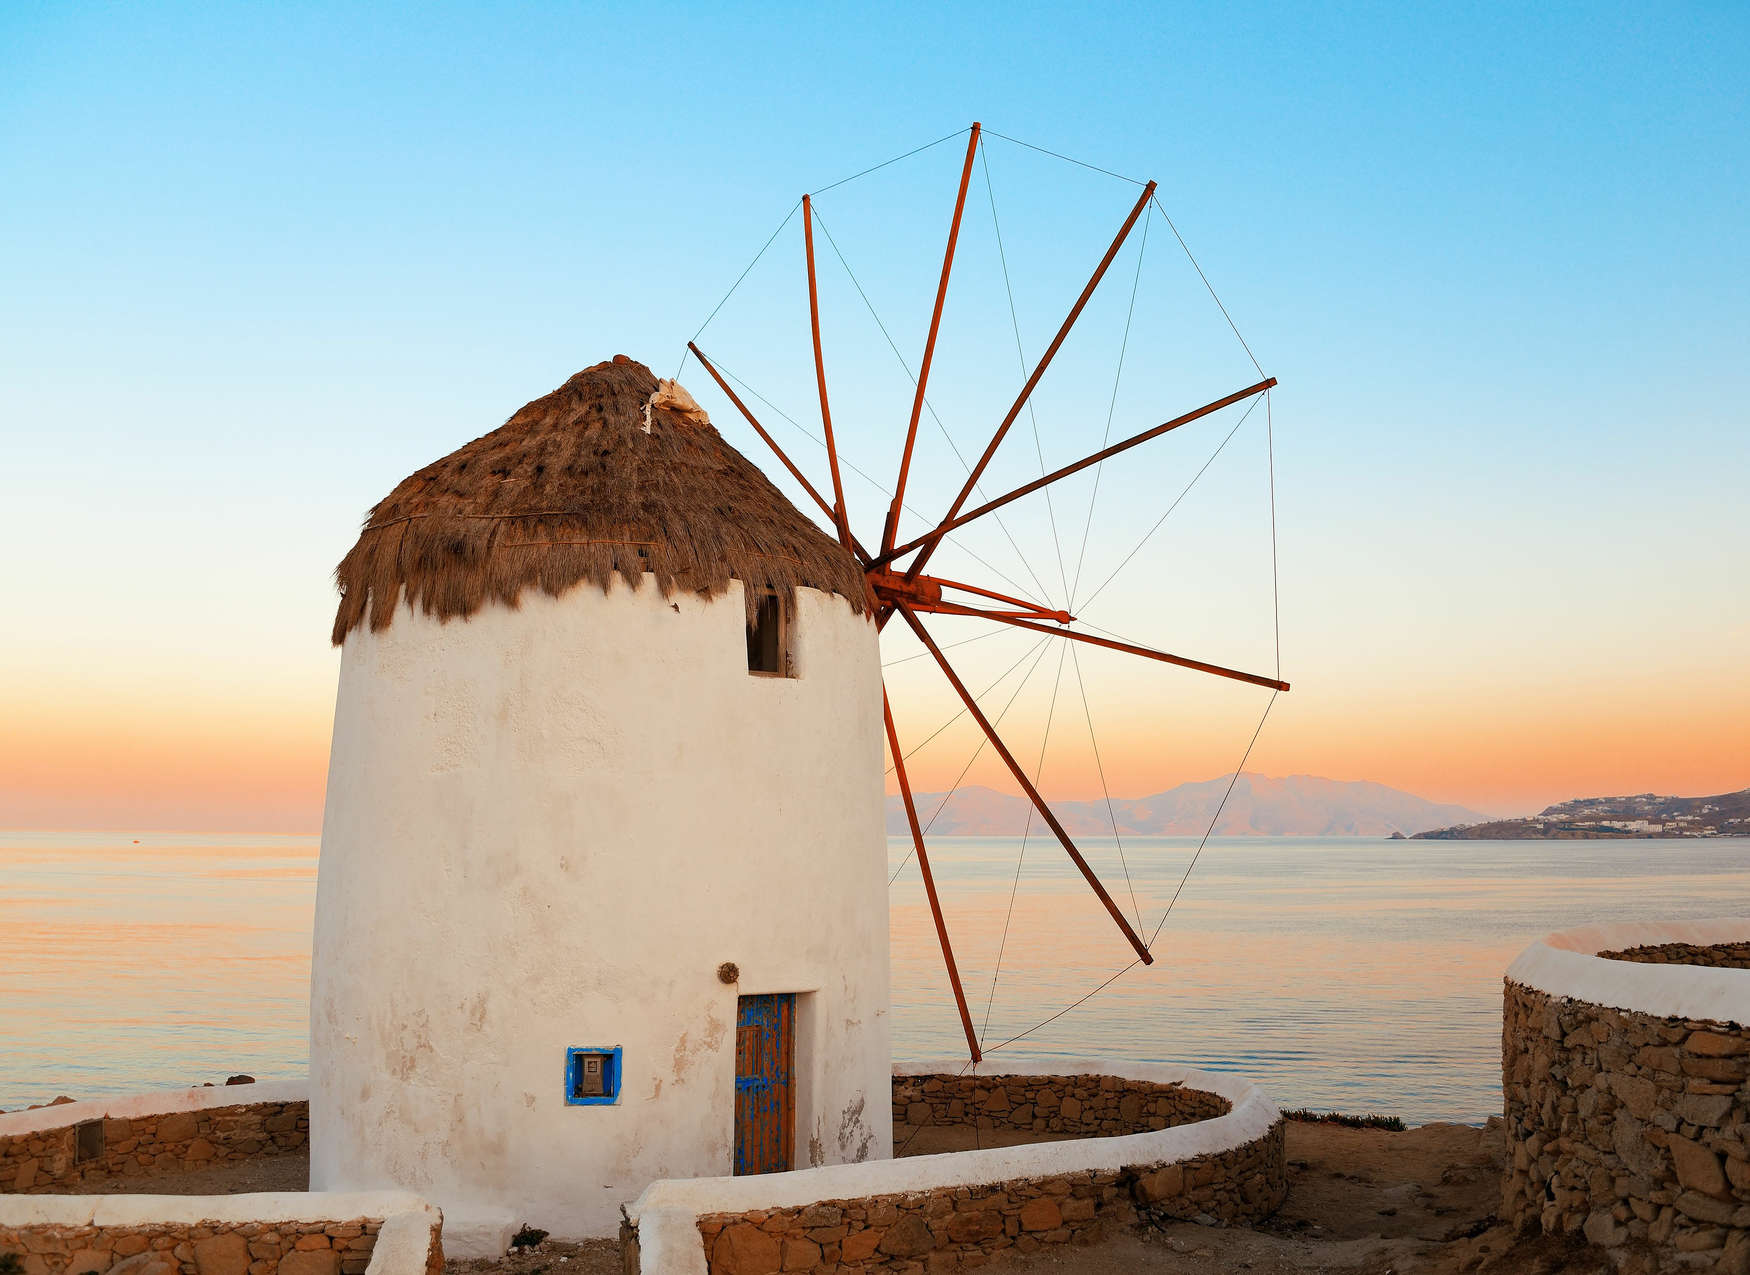             Fotomurali Mulino a vento greco sulla costa - Blu, Arancione, Beige
        